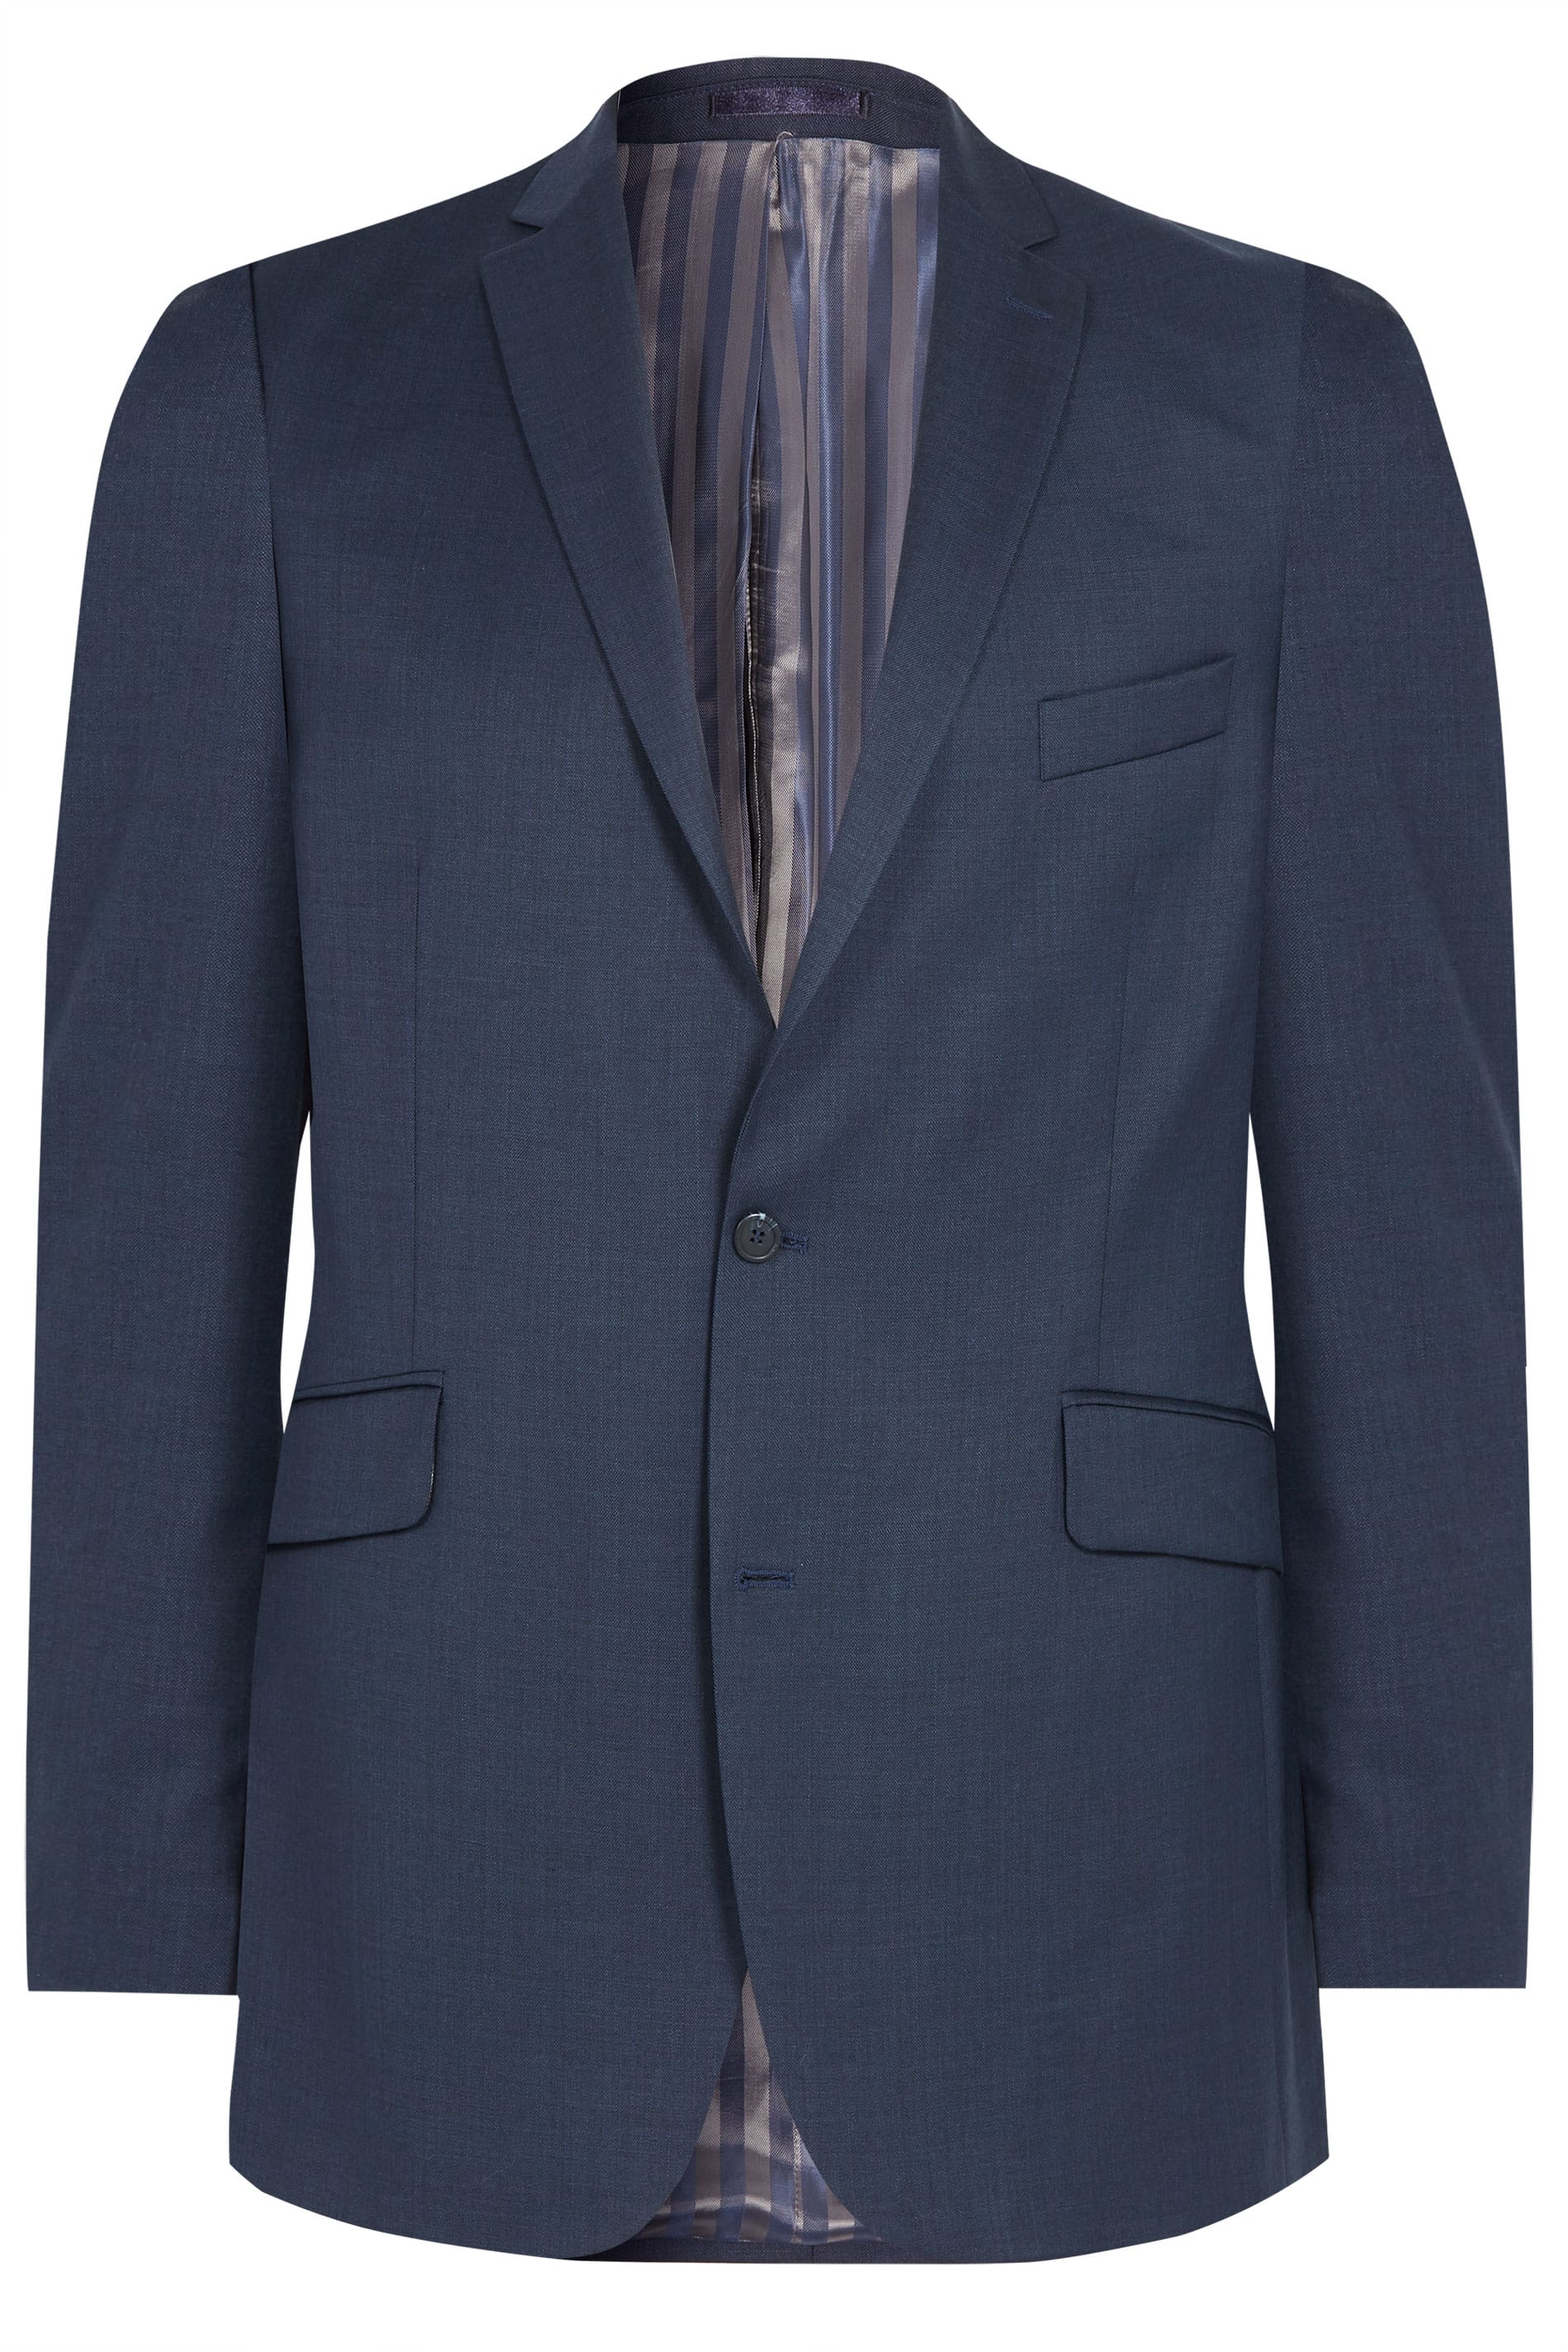 BadRhino Navy Blue Sharkskin Suit Jacket | Sizes 44